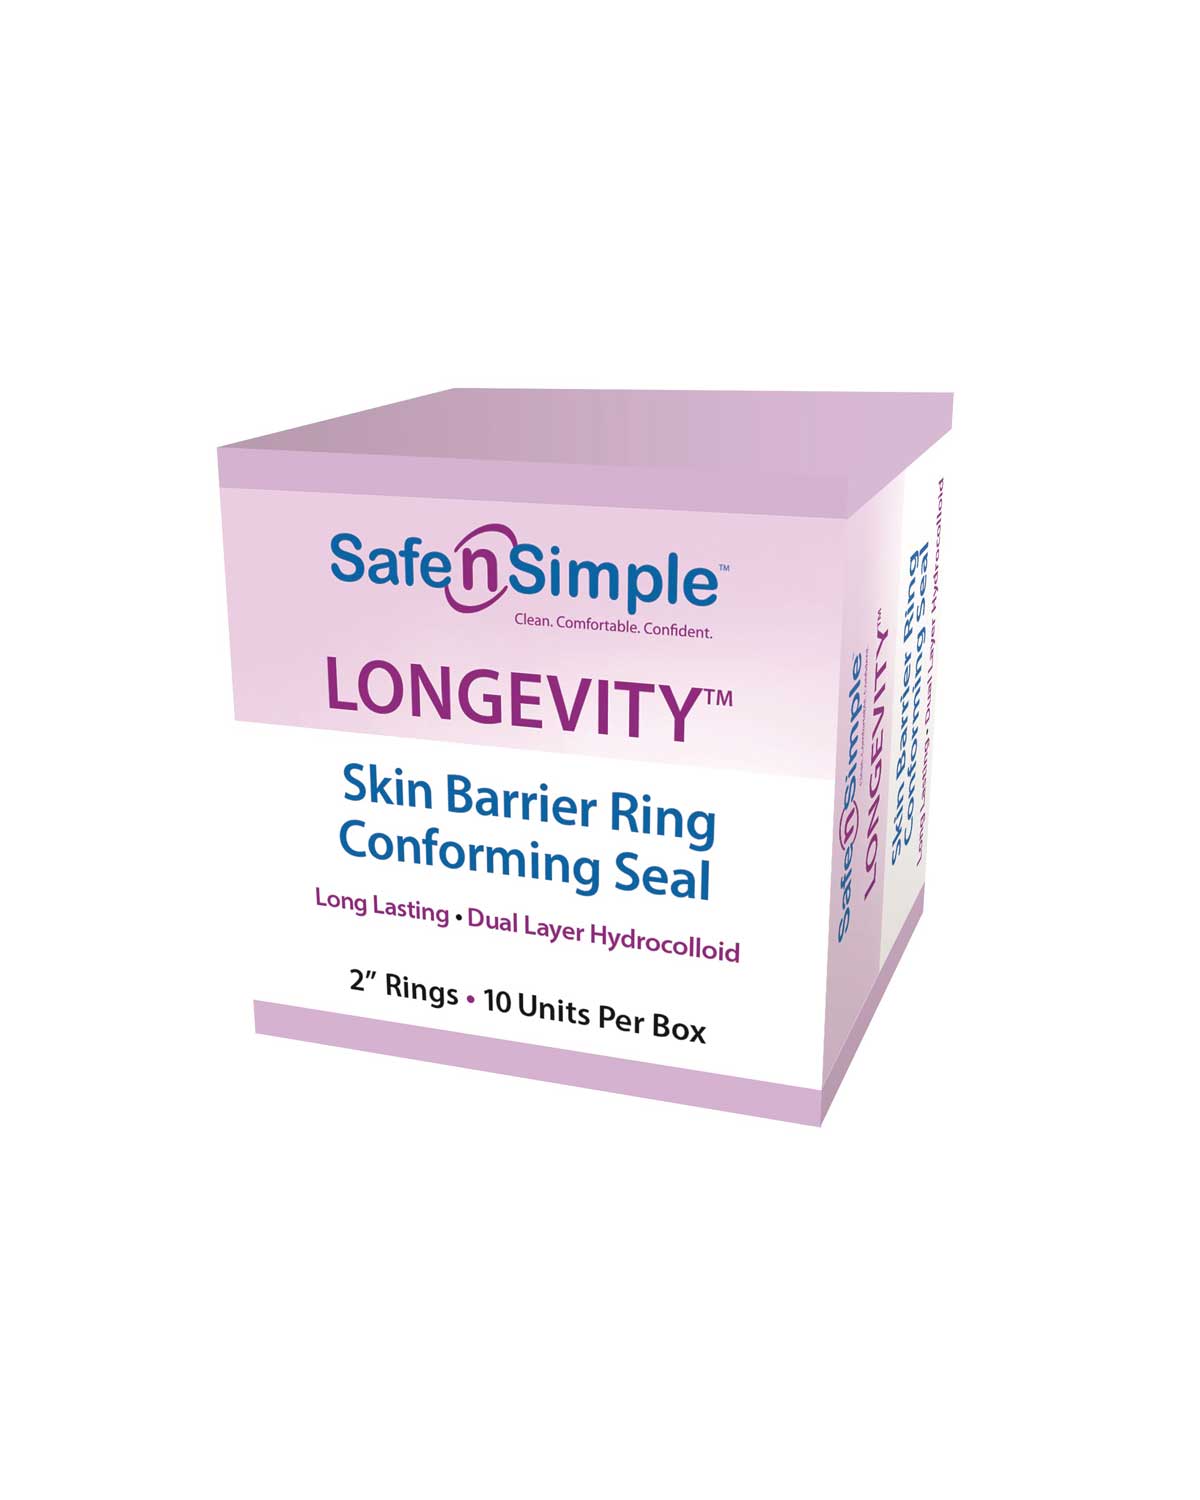 Safe n Simple Longevity Skin Barrier Rings - 10 per box